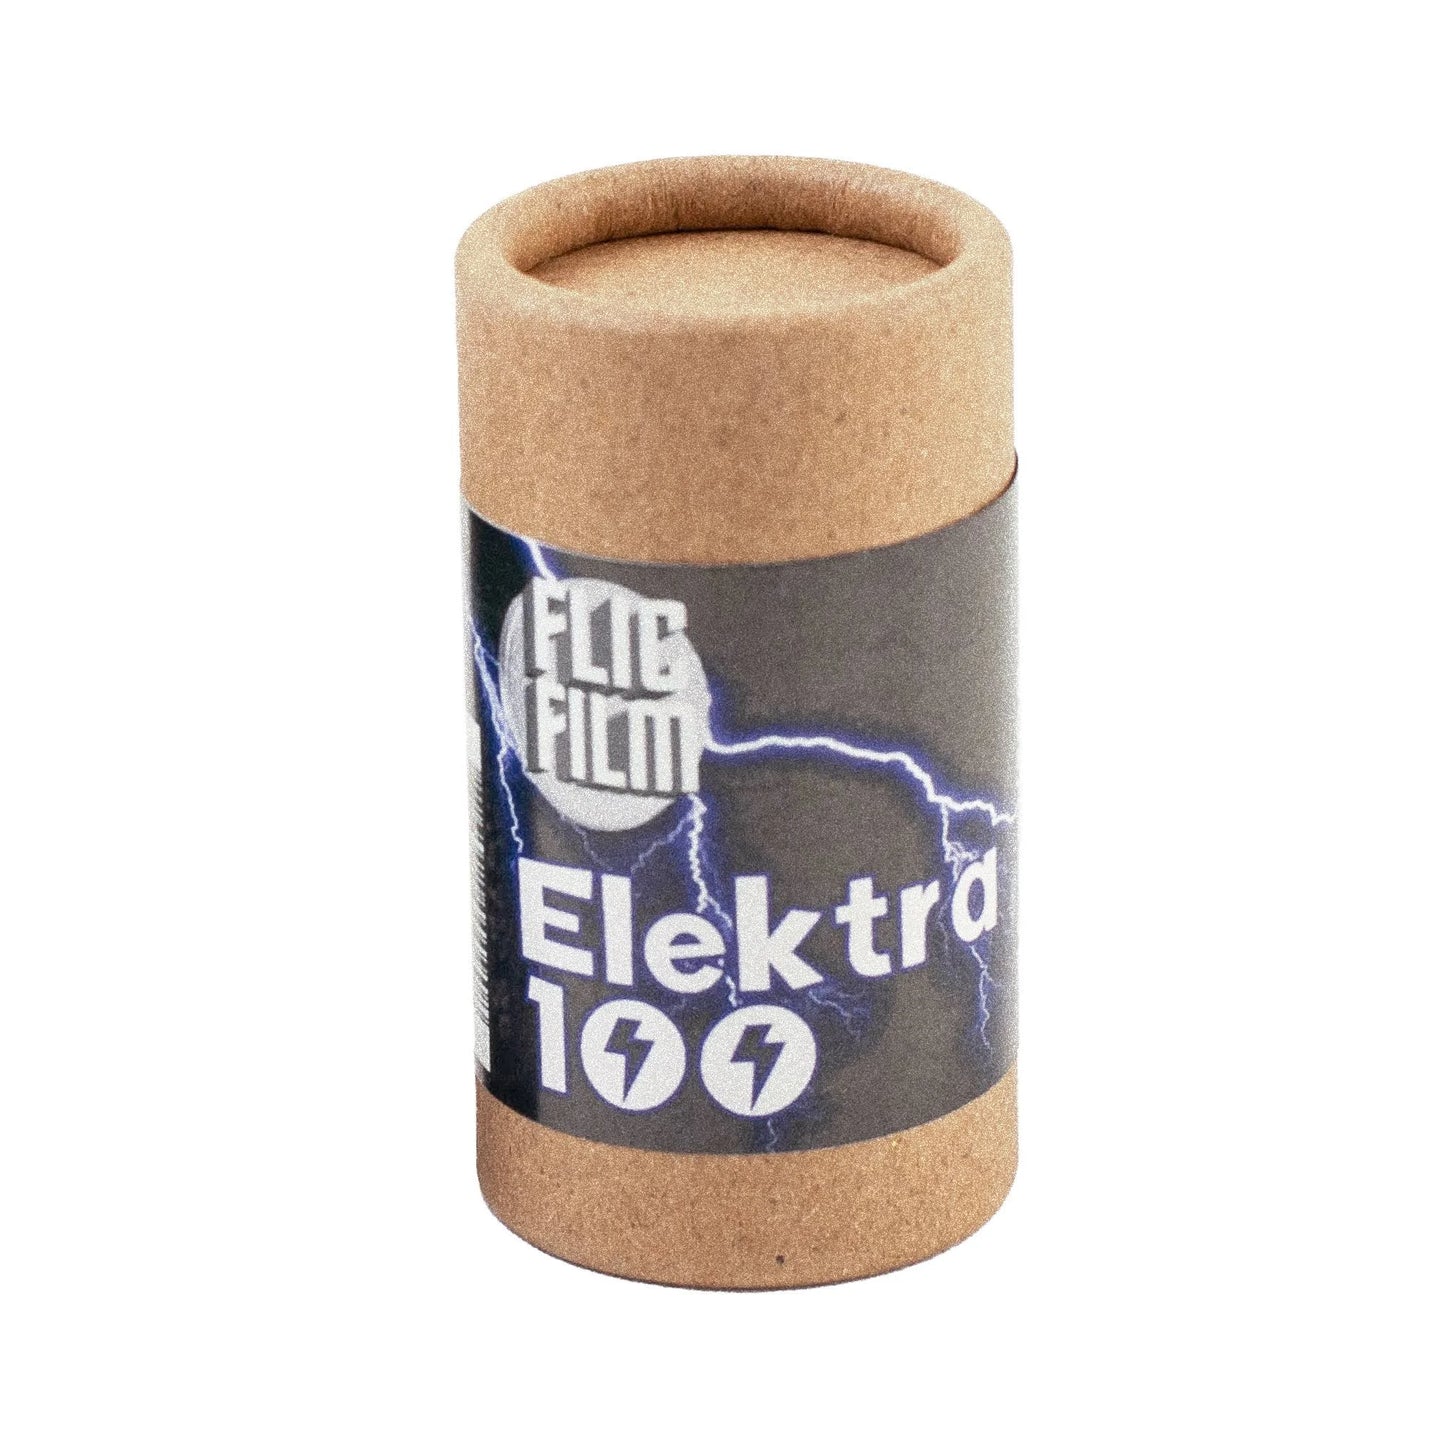 Flic Film - Elektra 100 | C41 | 35mm | 36ex